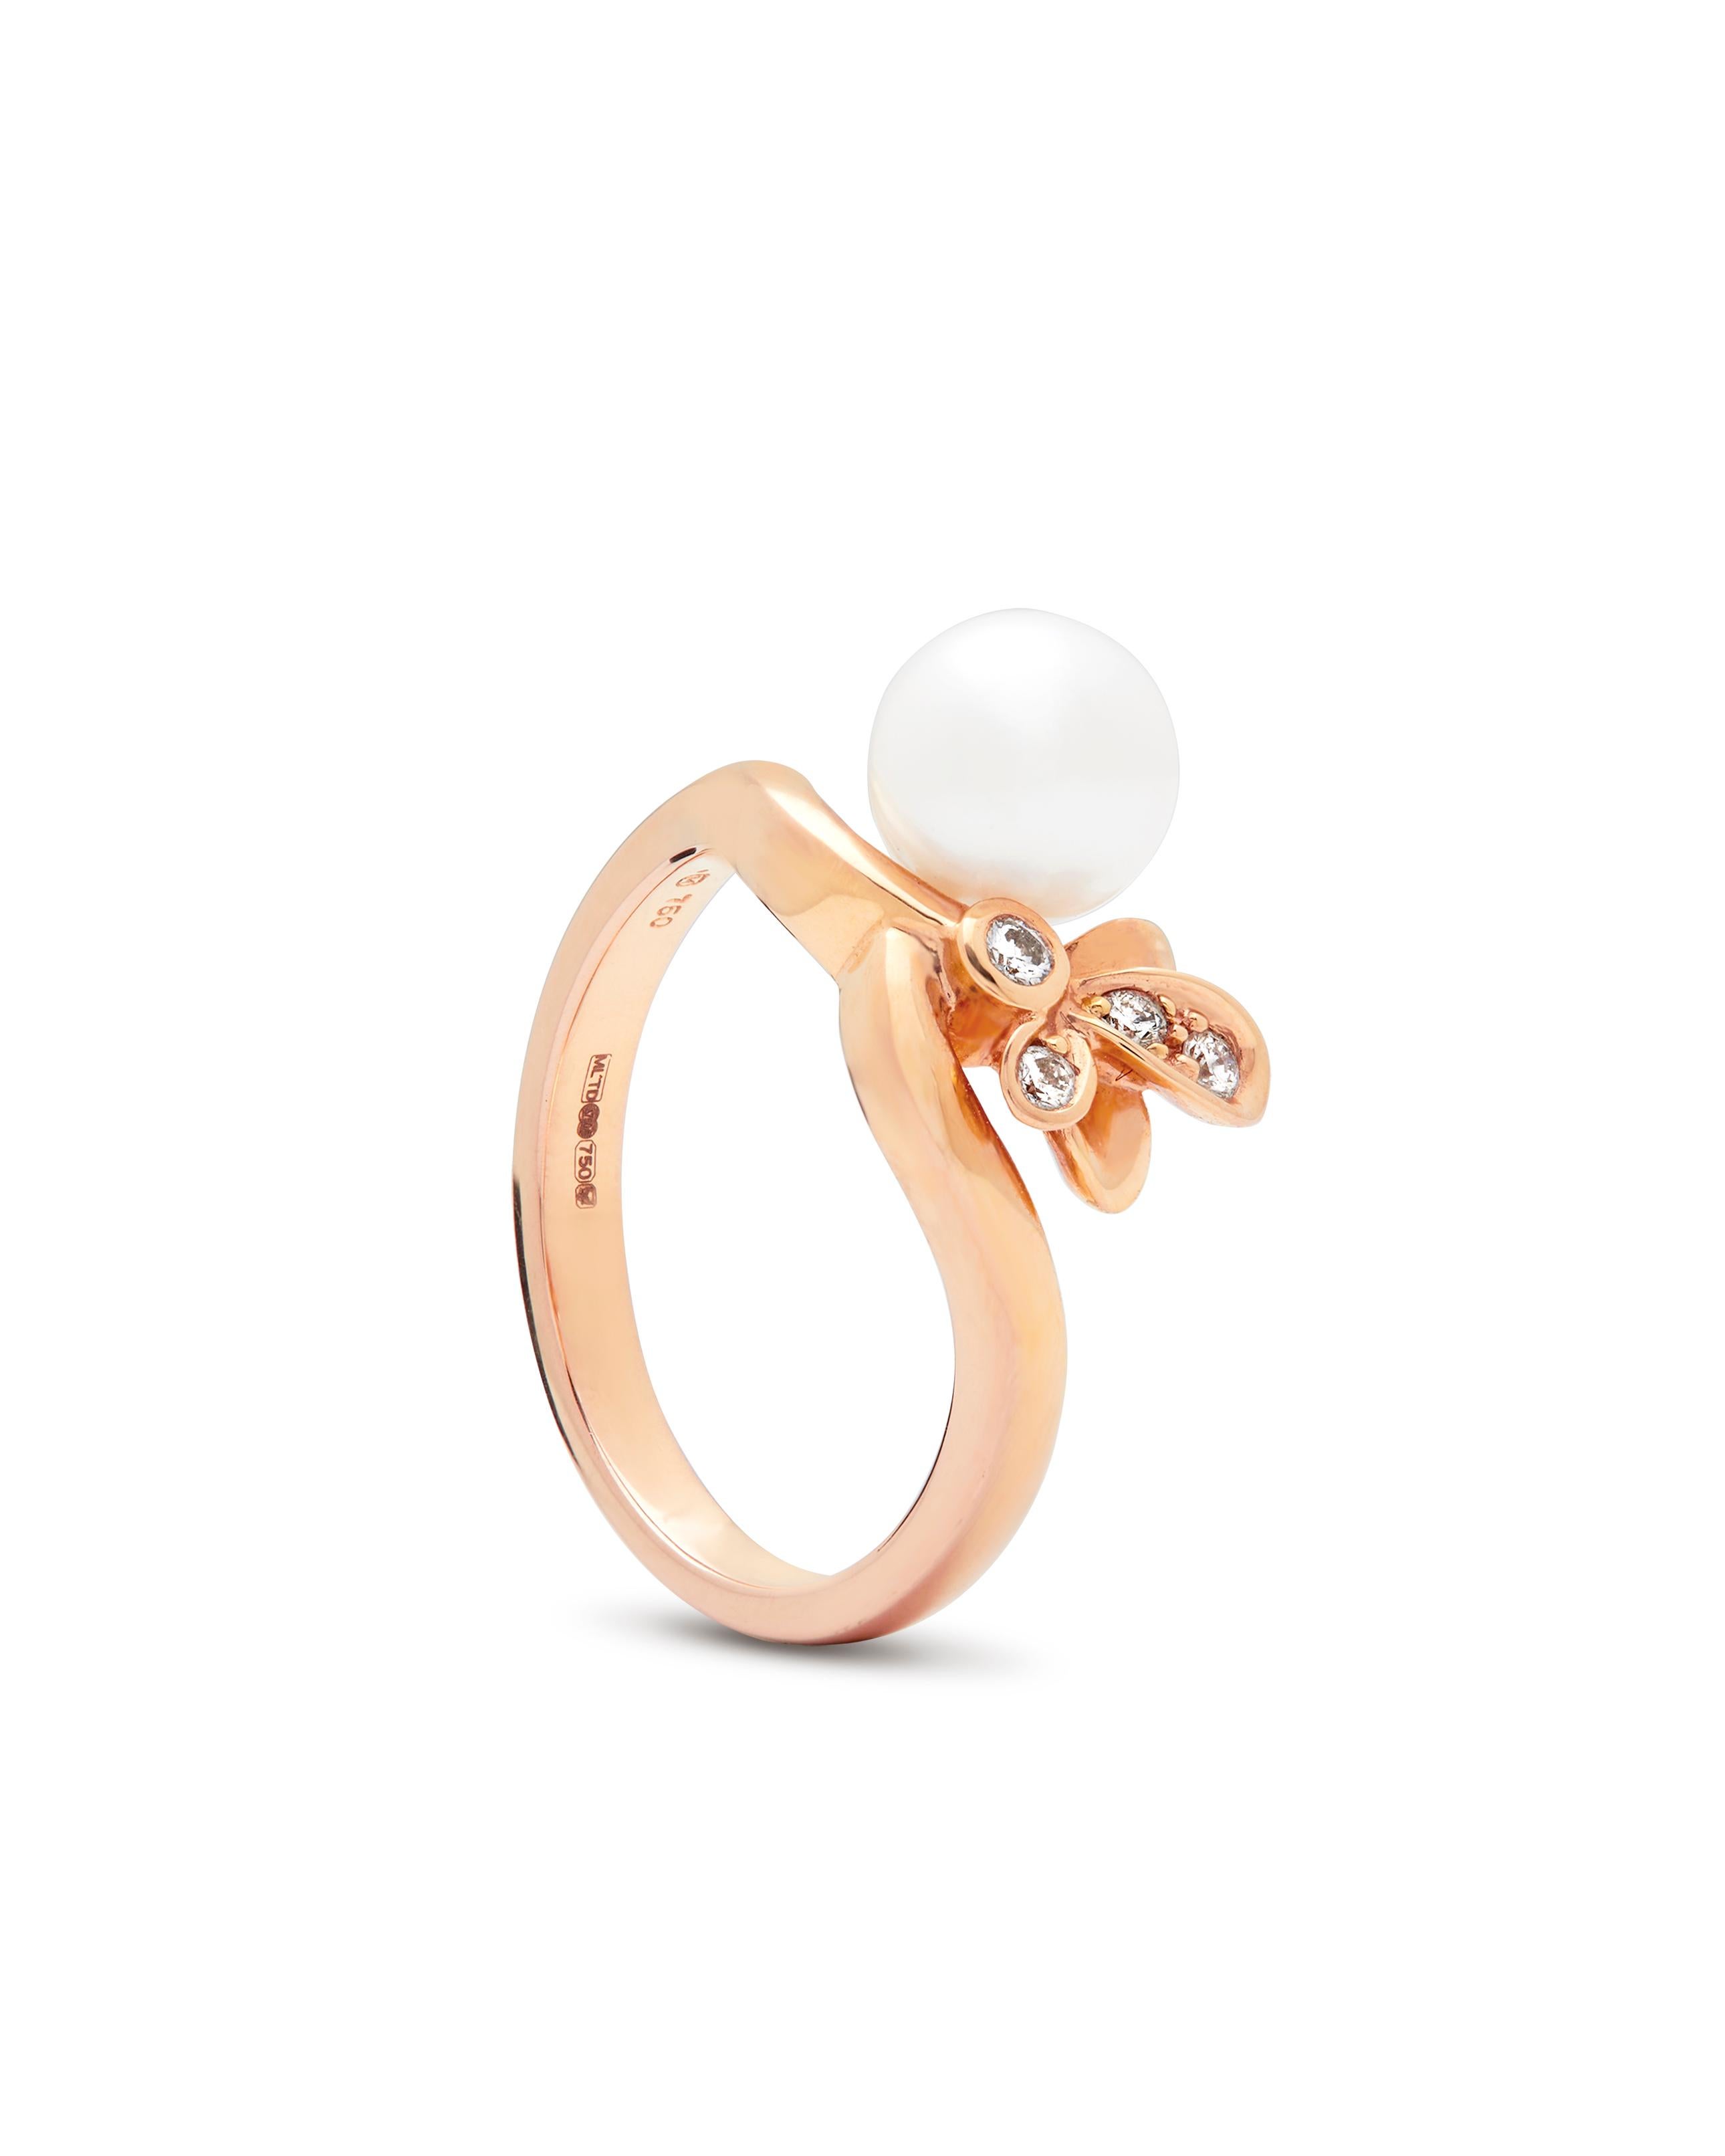 Collection 'Dandelion' de Mikimoto, bague en or rose 18 carats ornée de perles et de diamants. 
La bague présente une perle d'Akoya d'une teinte légèrement rosée sertie d'un motif floral avec quatre diamants ronds de taille brillant de 0,06 carat. 